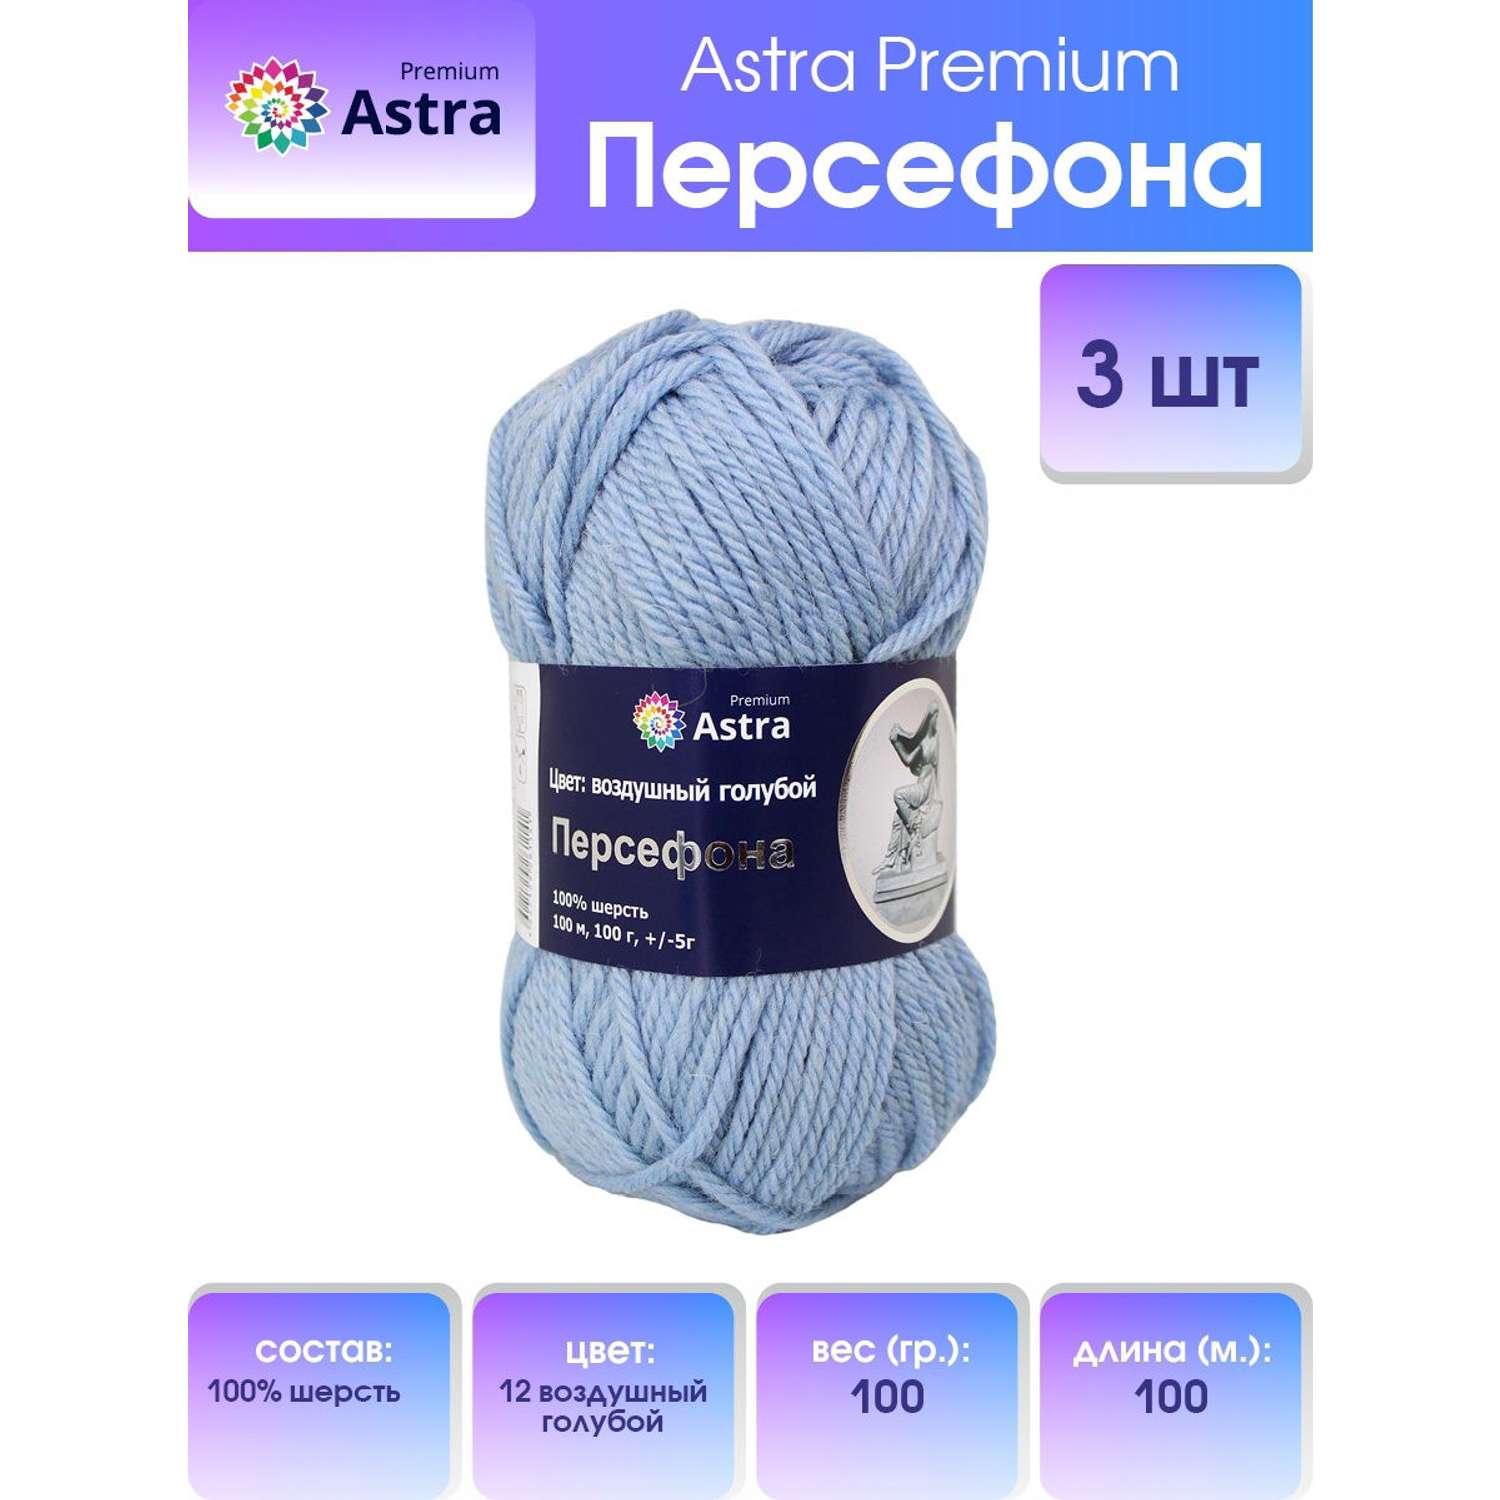 Пряжа Astra Premium Персефона шерстяная 100 г 100 м 12 воздушный голубой 3 мотка - фото 1